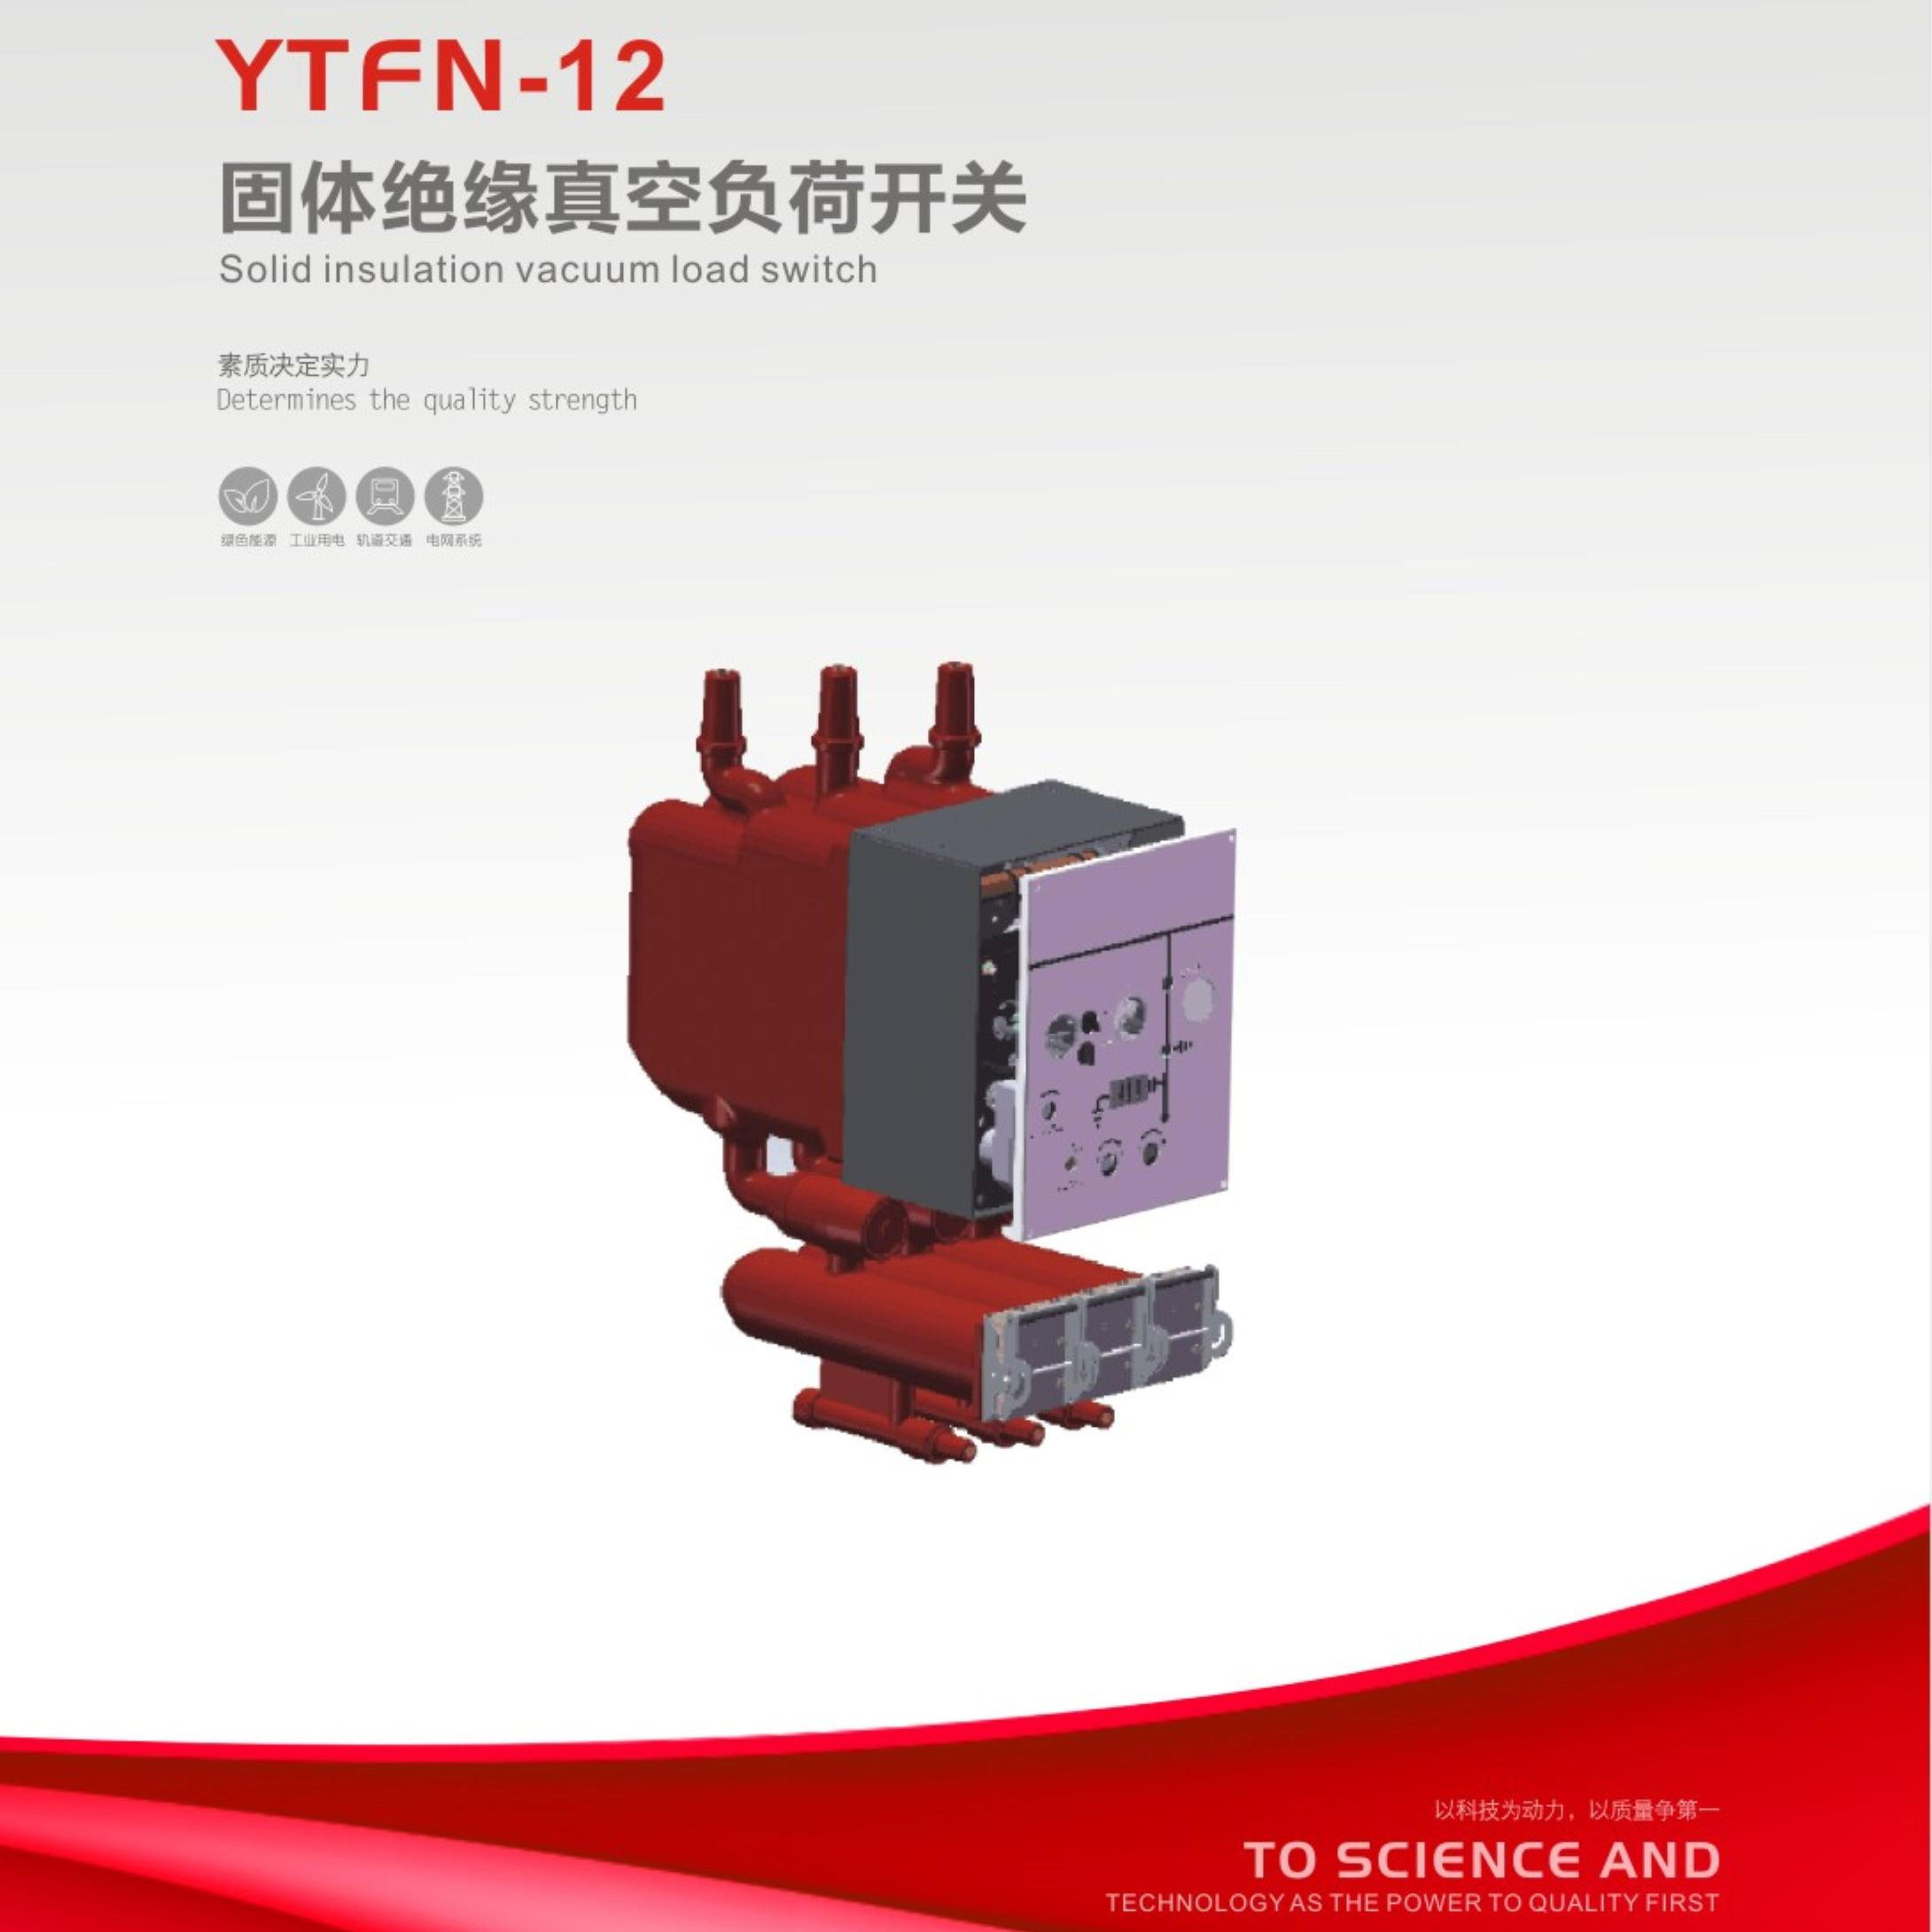 YTFN-12固体绝缘真空负荷开关